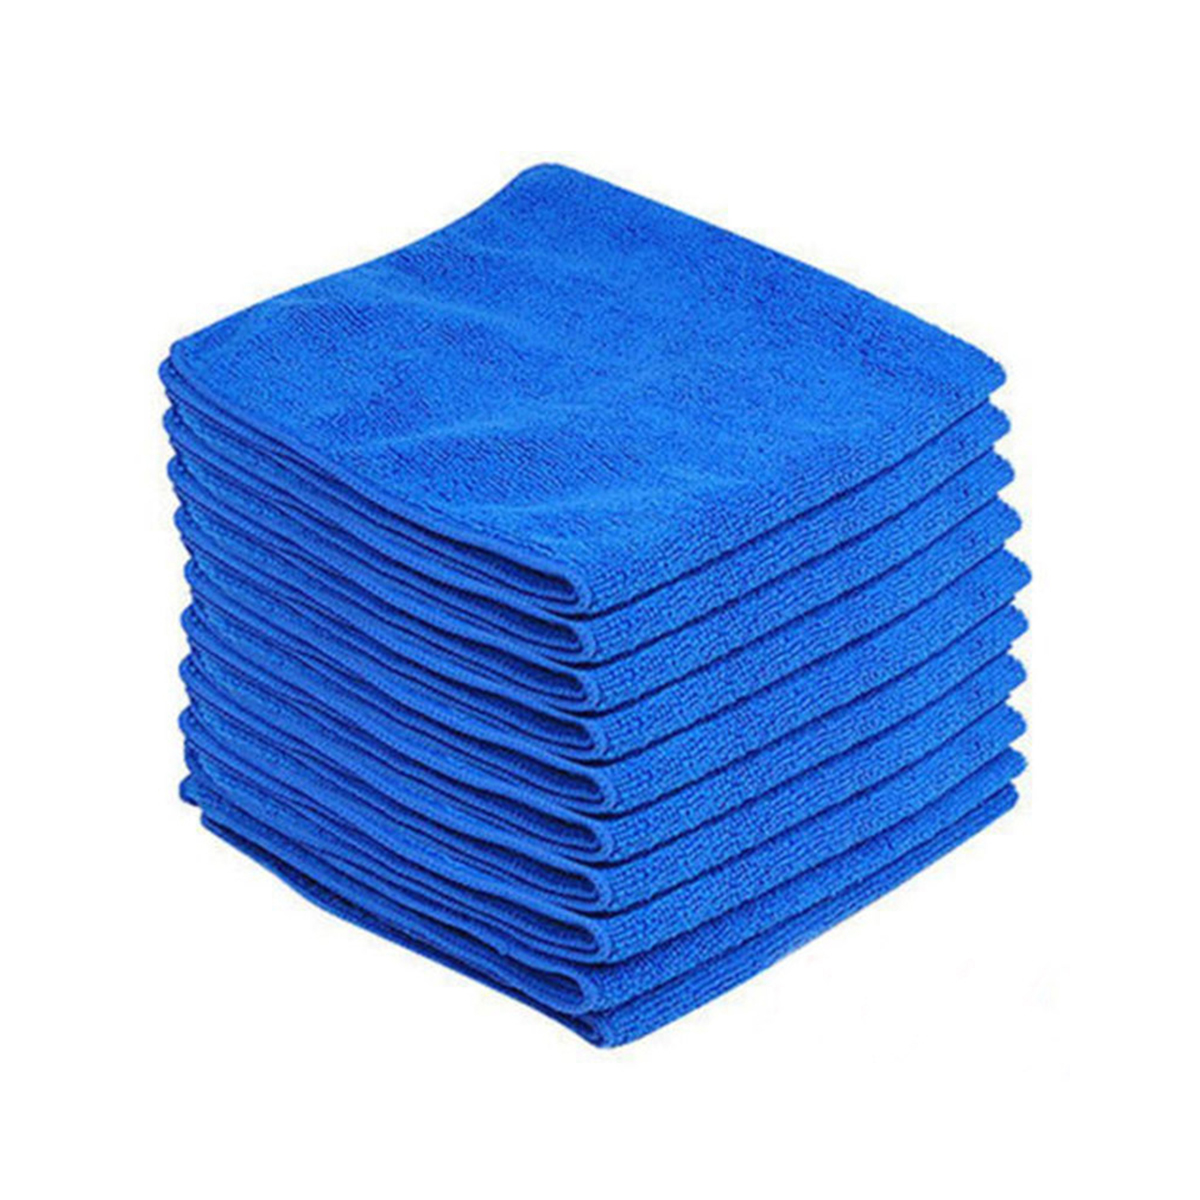 

Чистящие салфетки из микрофибры для стирки Полотенце Синий для Авто Полировка воска Детализация сушка